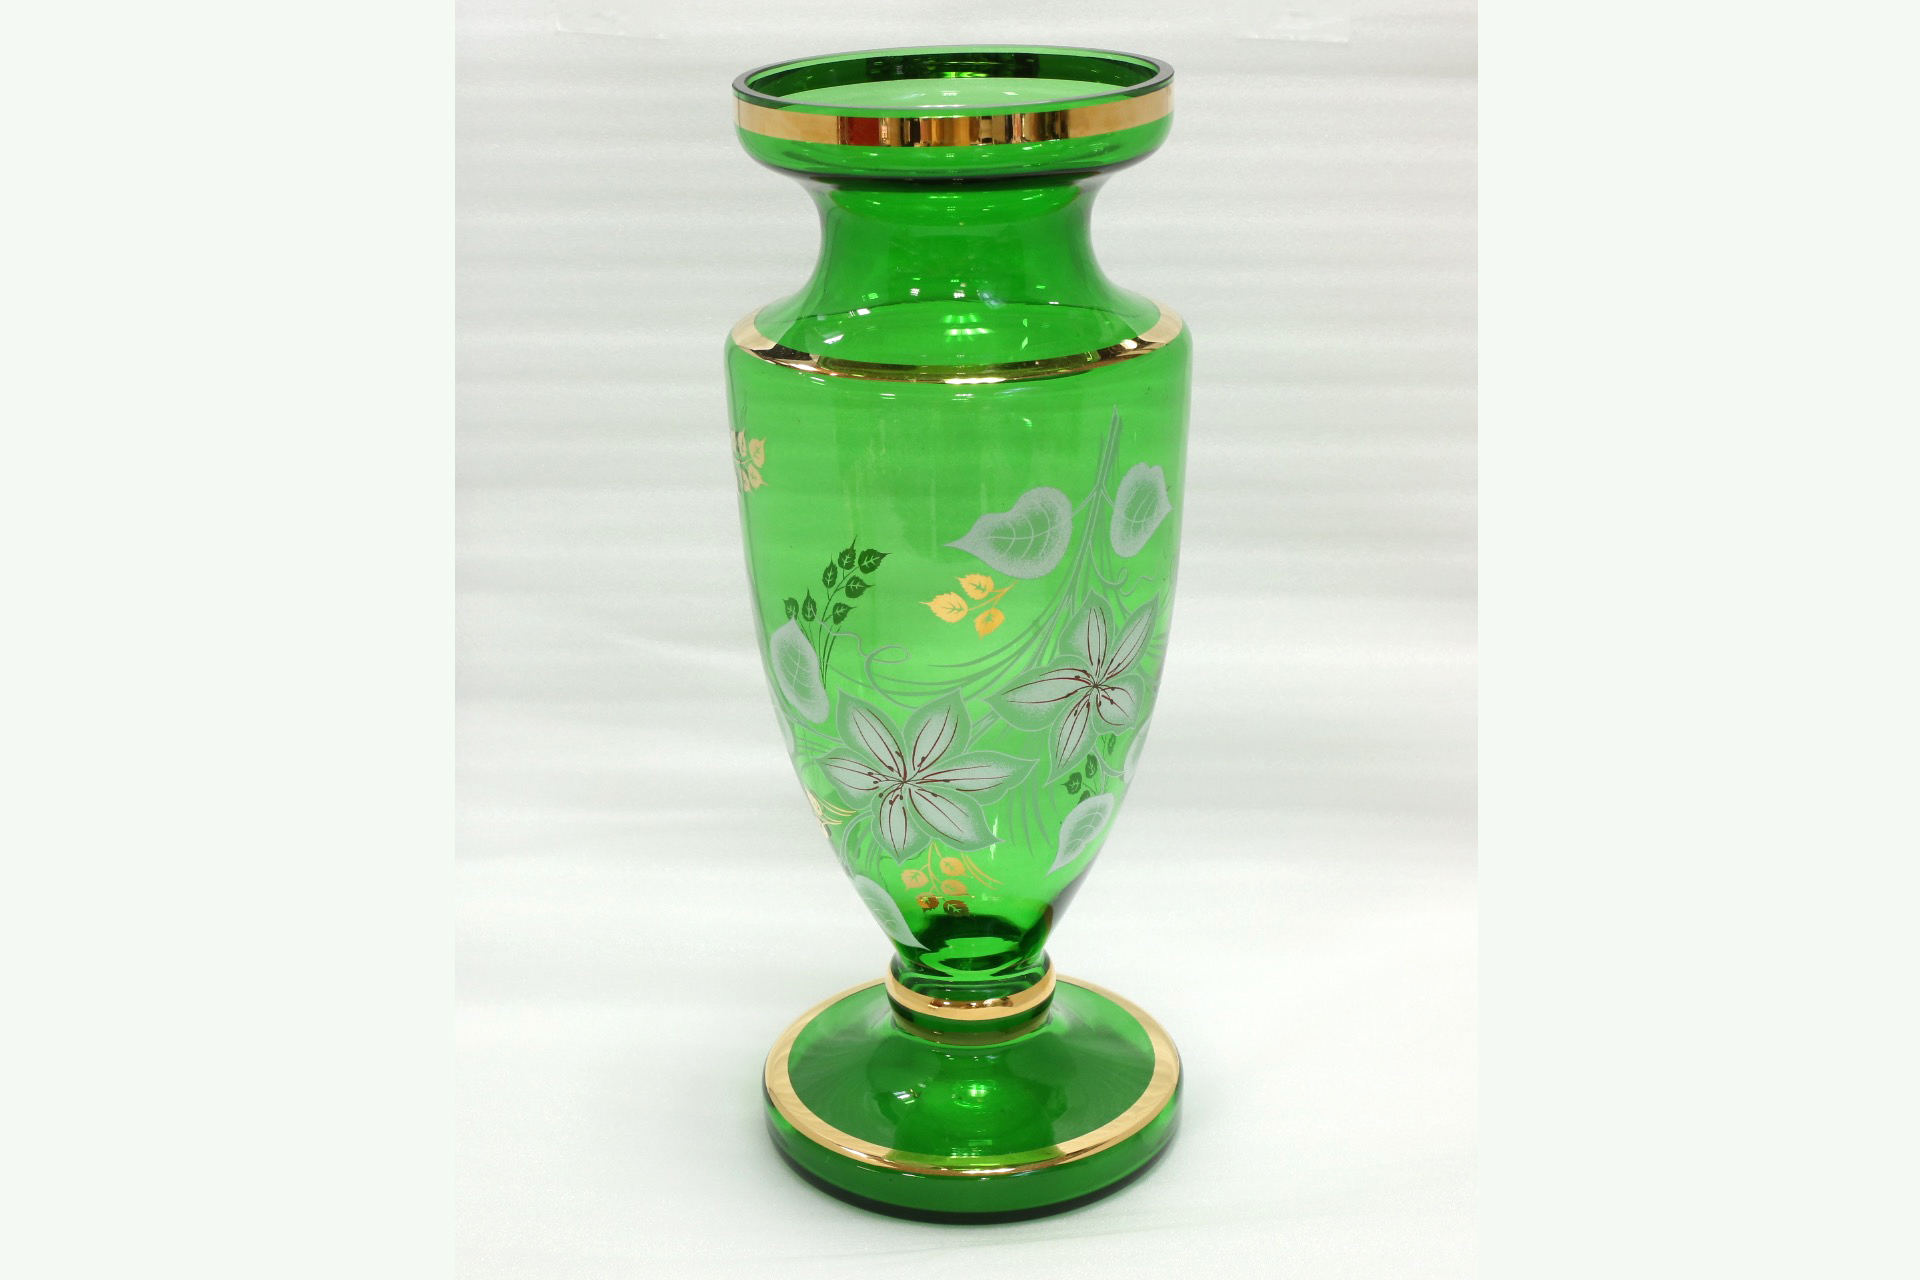 ボヘミアン・グラス、ガラス壺、大花瓶、高さ51cm、木箱入り、チェコスロバキア製